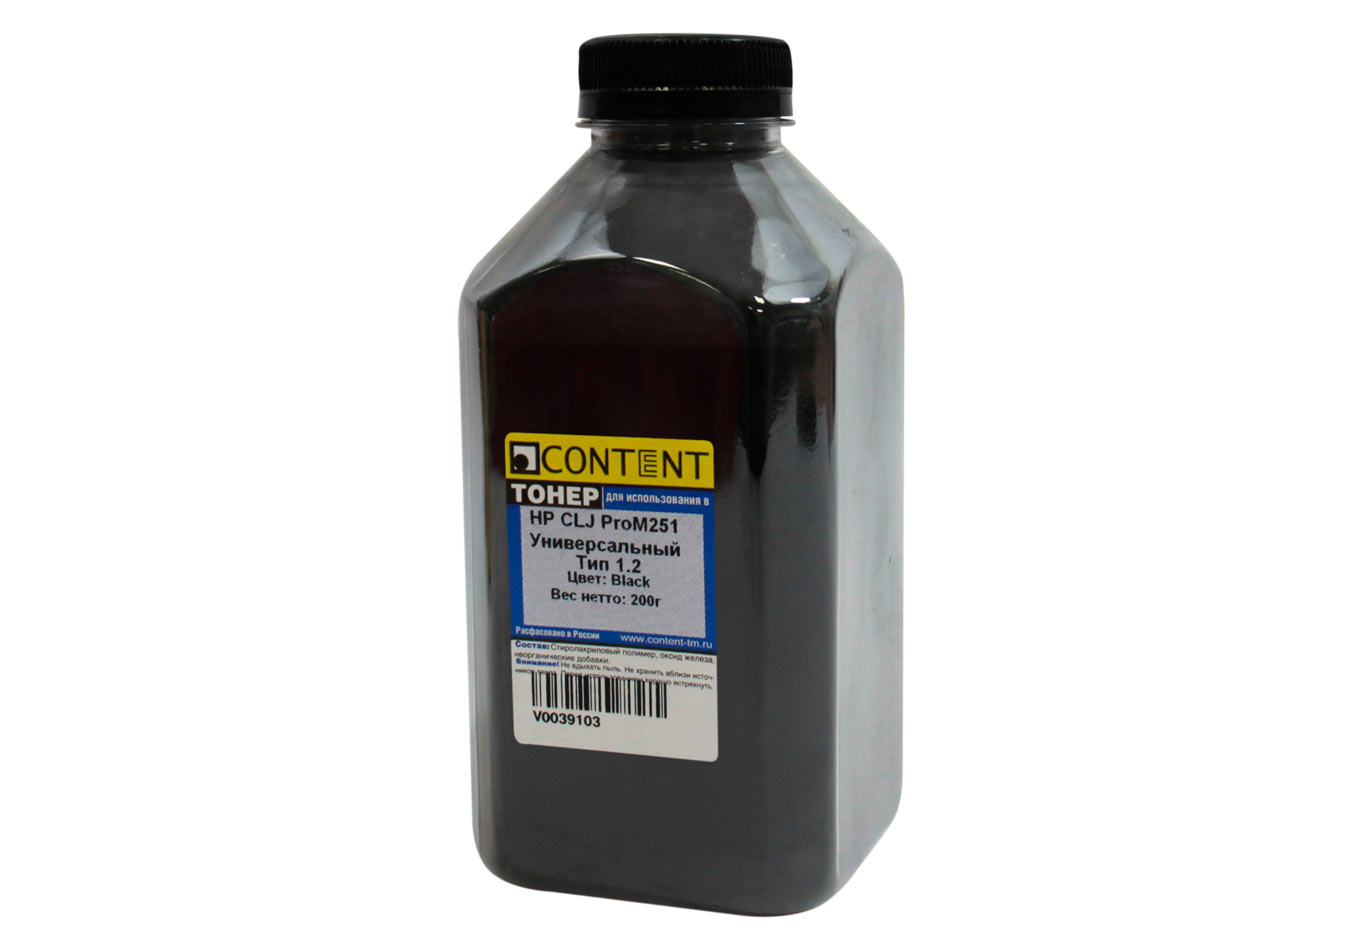 Тонер Content Тип 1.2, бутыль 200 г, черный, совместимый для CLJ Pro M251, универсальный (V0039103)